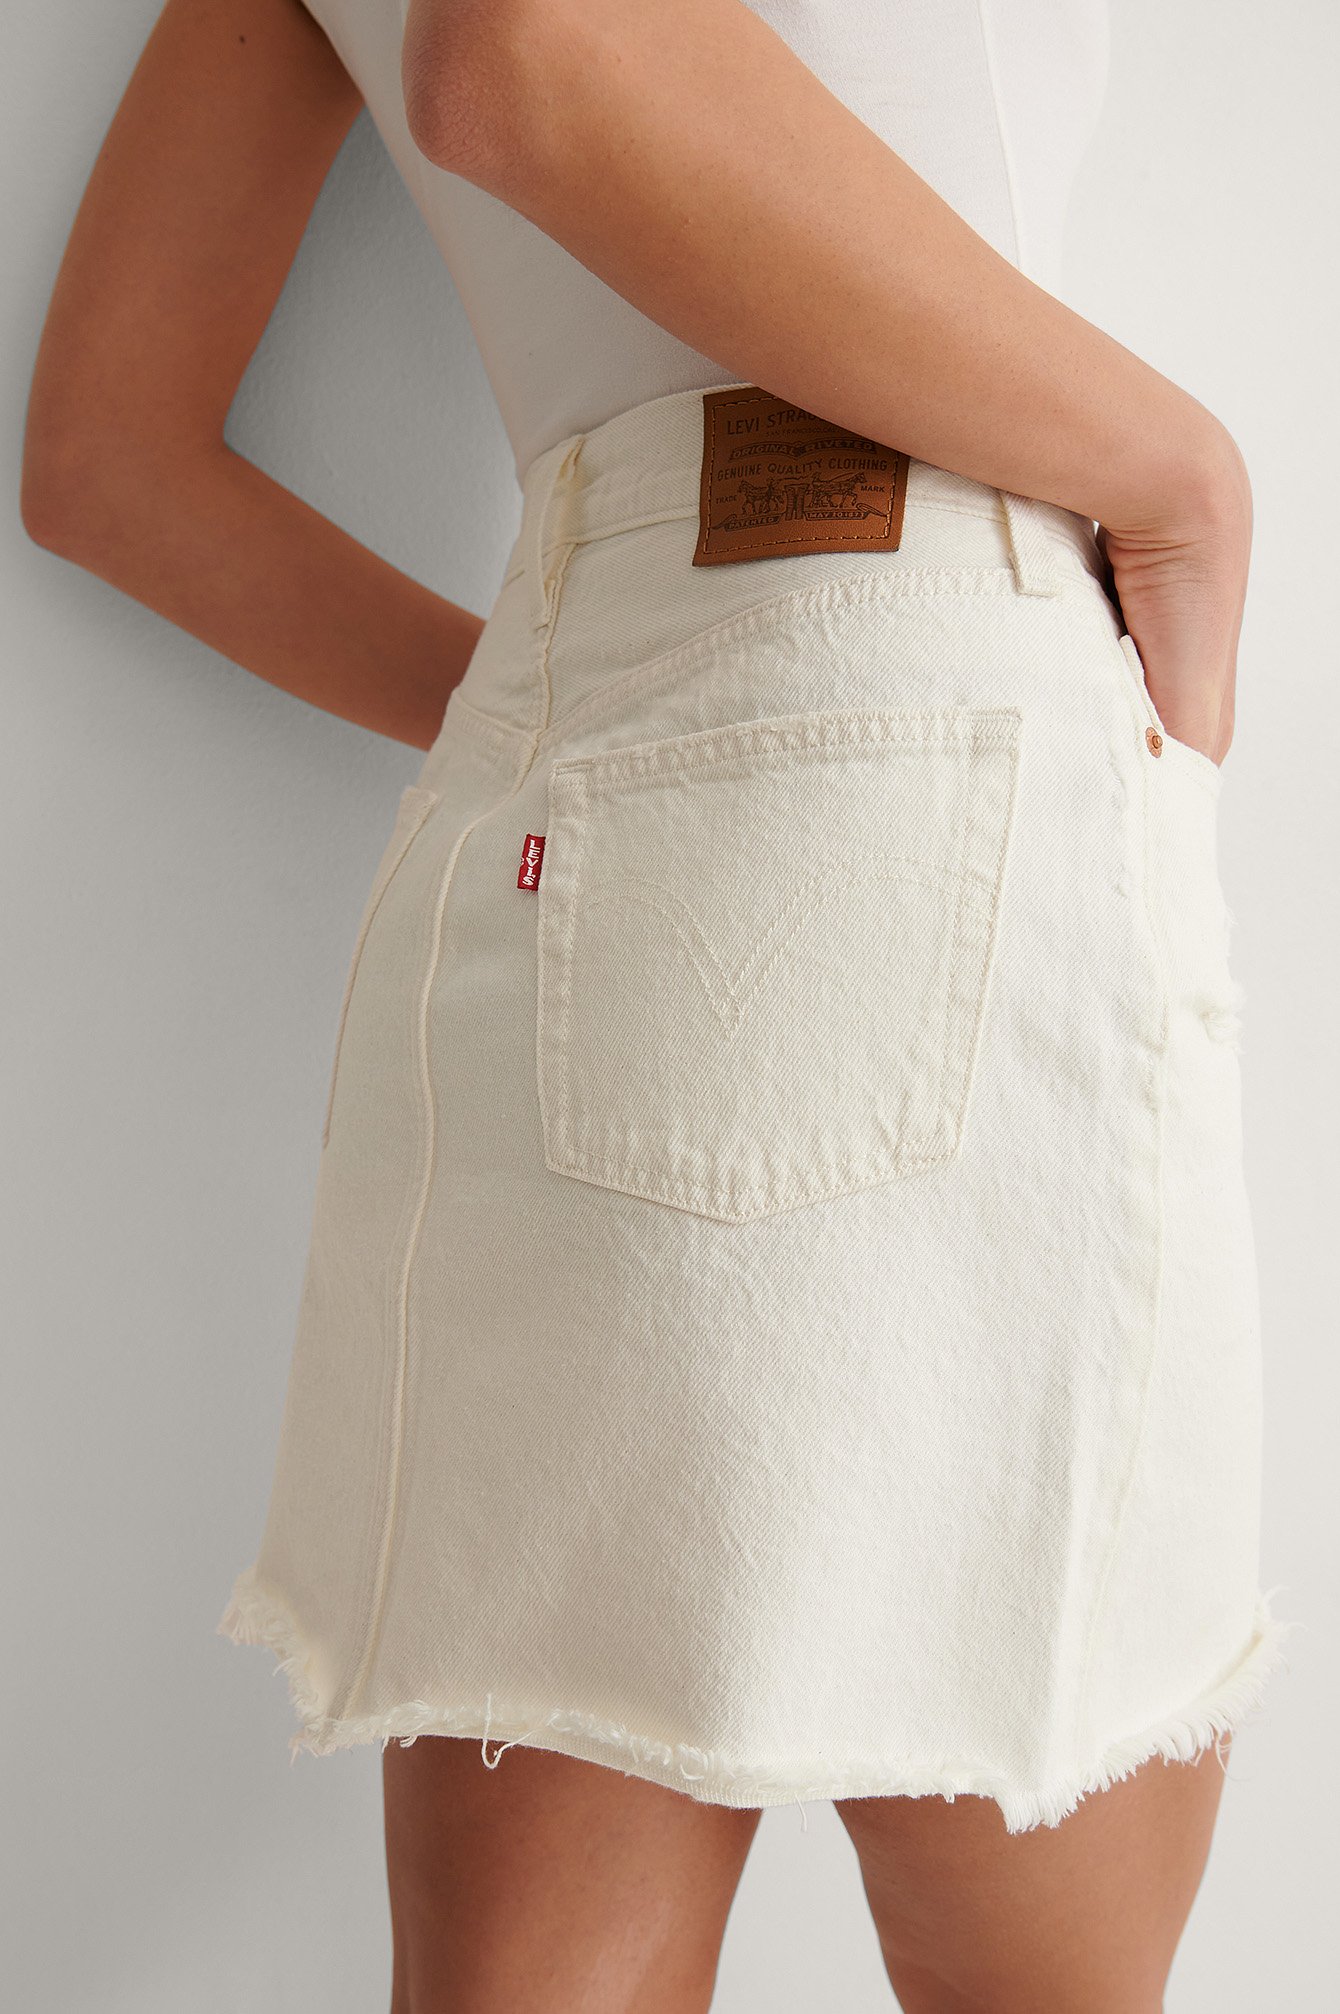 levis white skirt